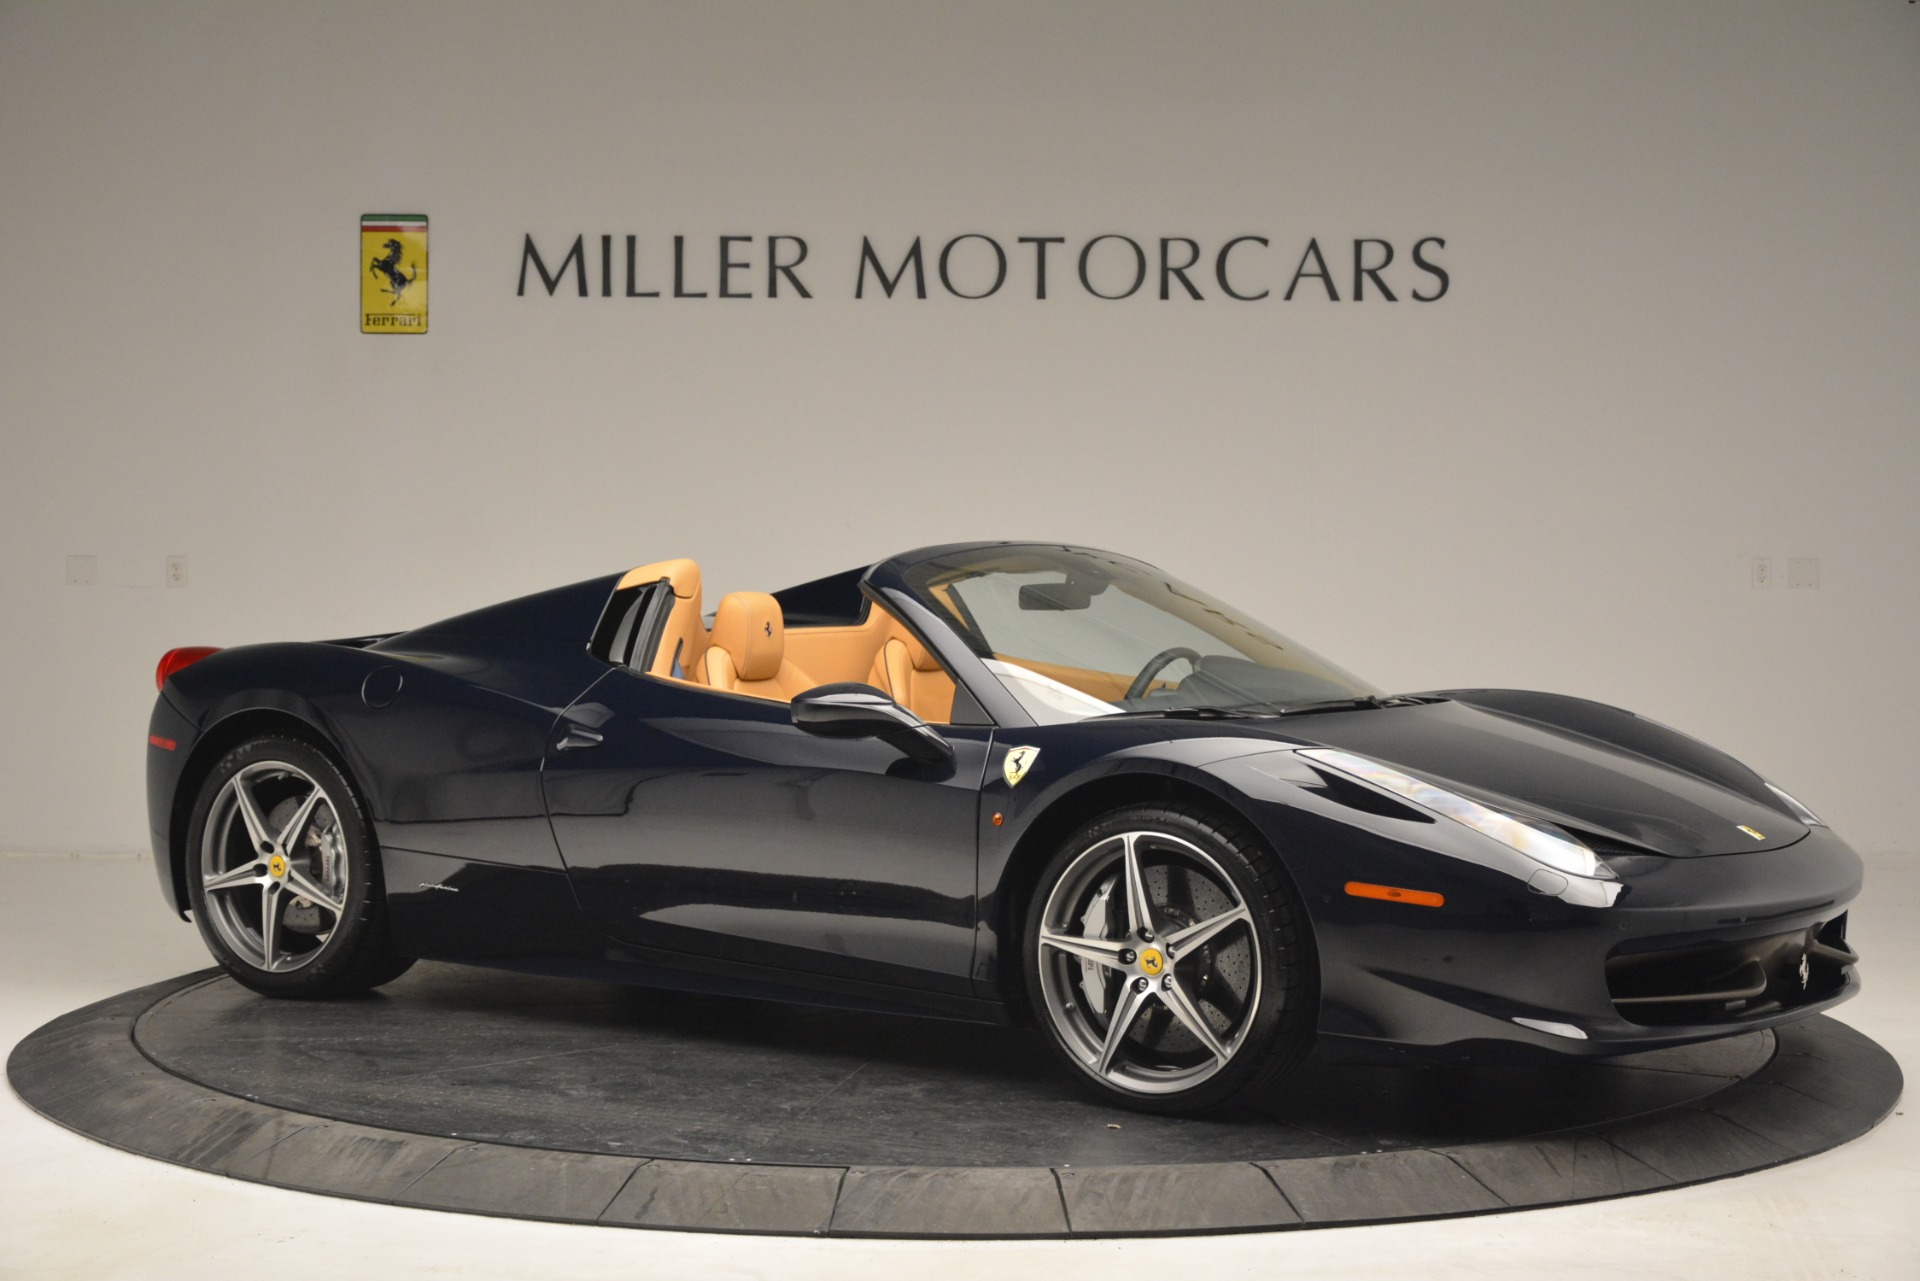 Pre Owned 2014 Ferrari 458 Spider For Sale Miller Motorcars Stock 4513